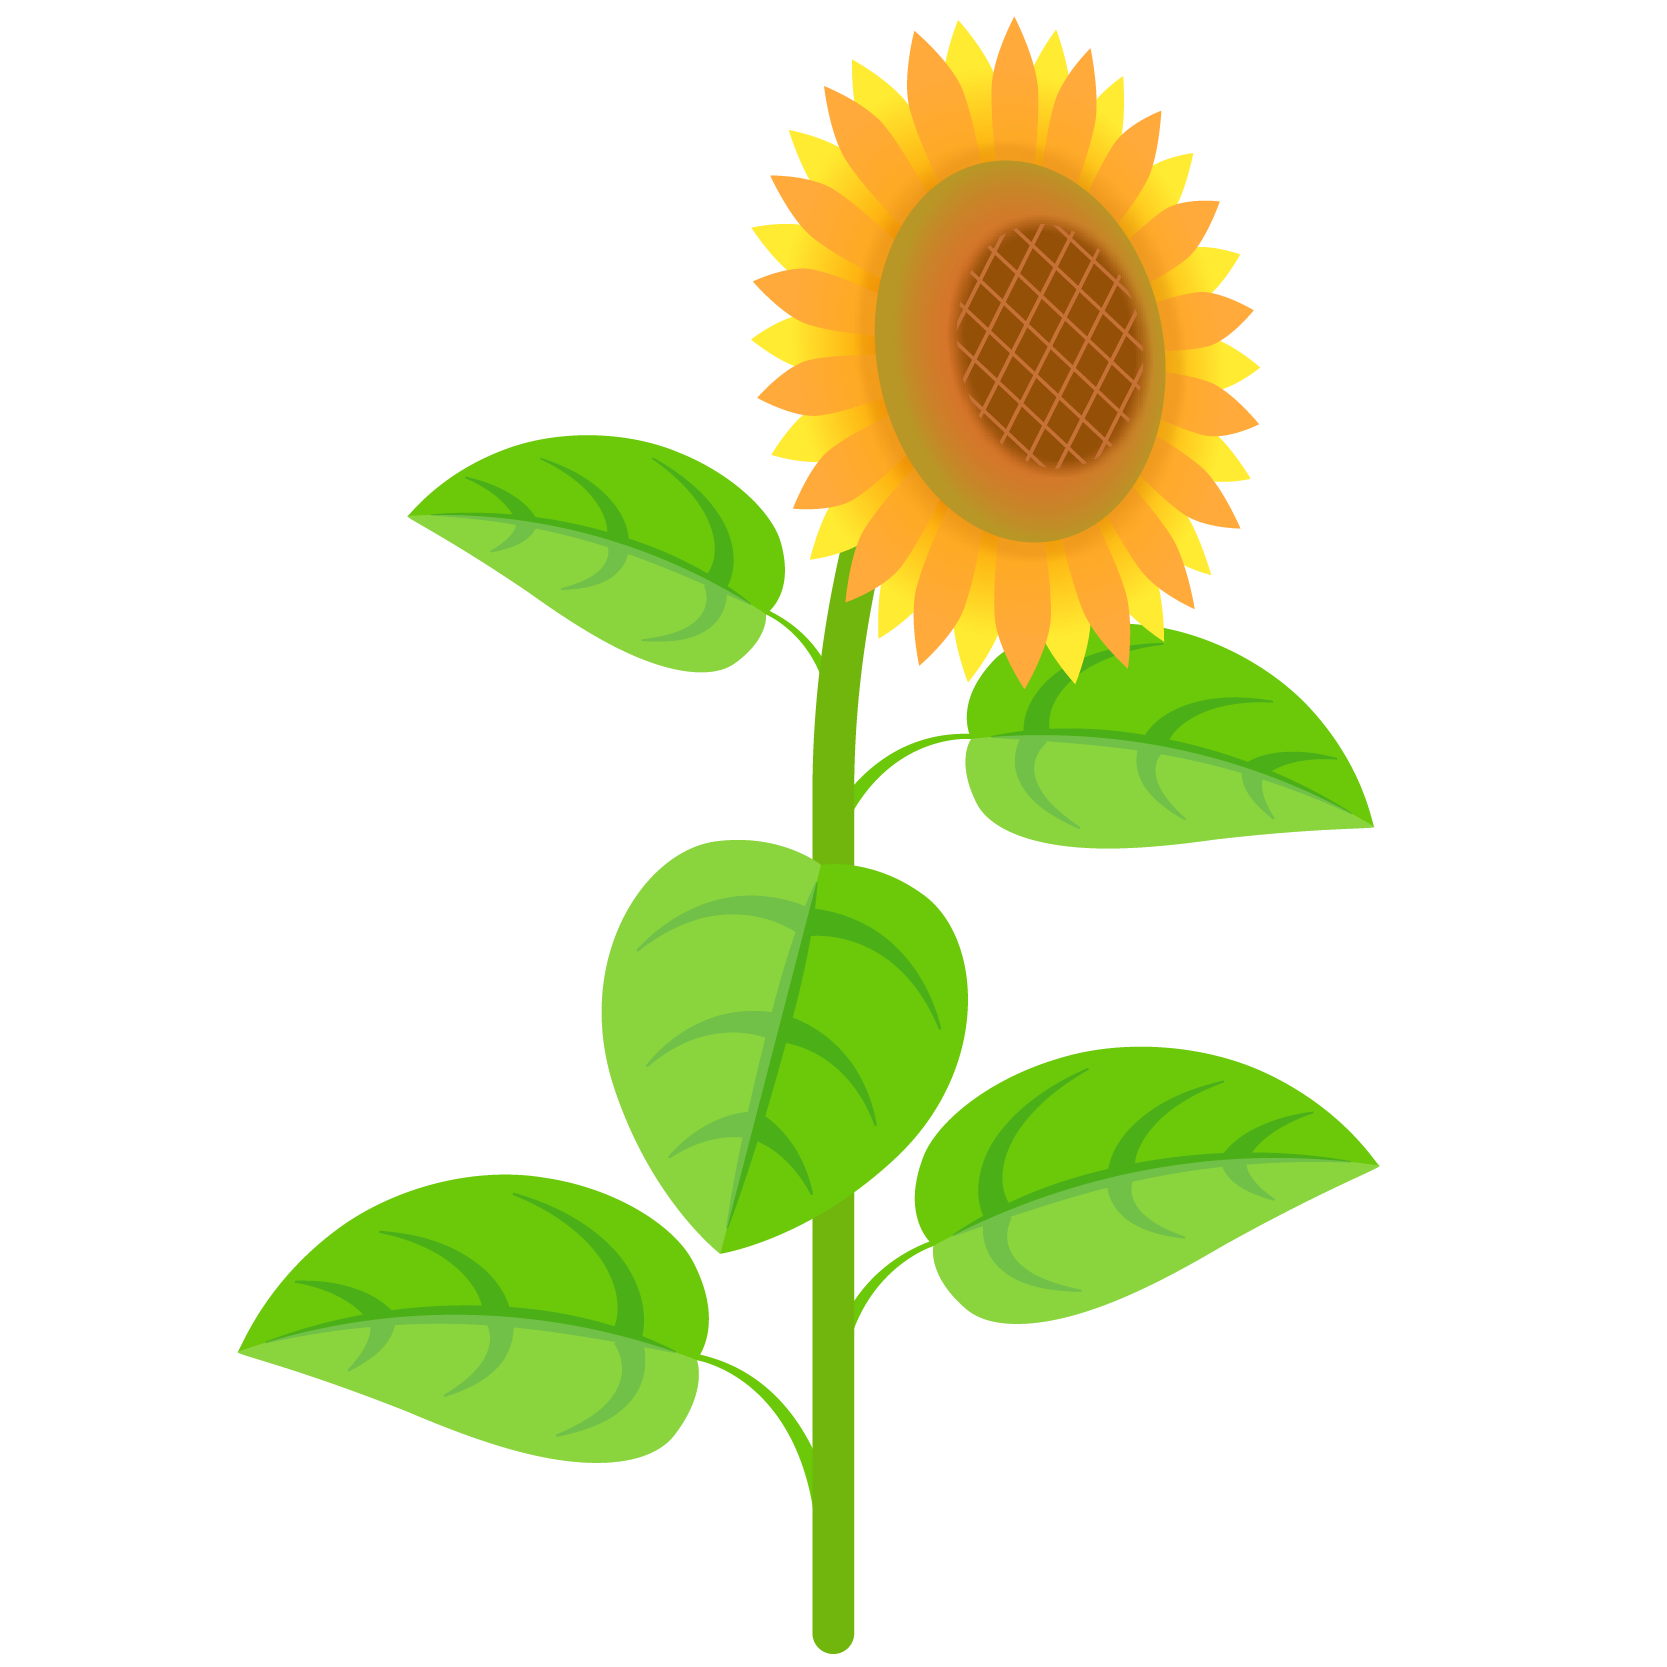 商用フリー 無料イラスト ひまわり 向日葵 のイラスト Sunflowerillustration003 商用ok フリー素材集 ナイスなイラスト